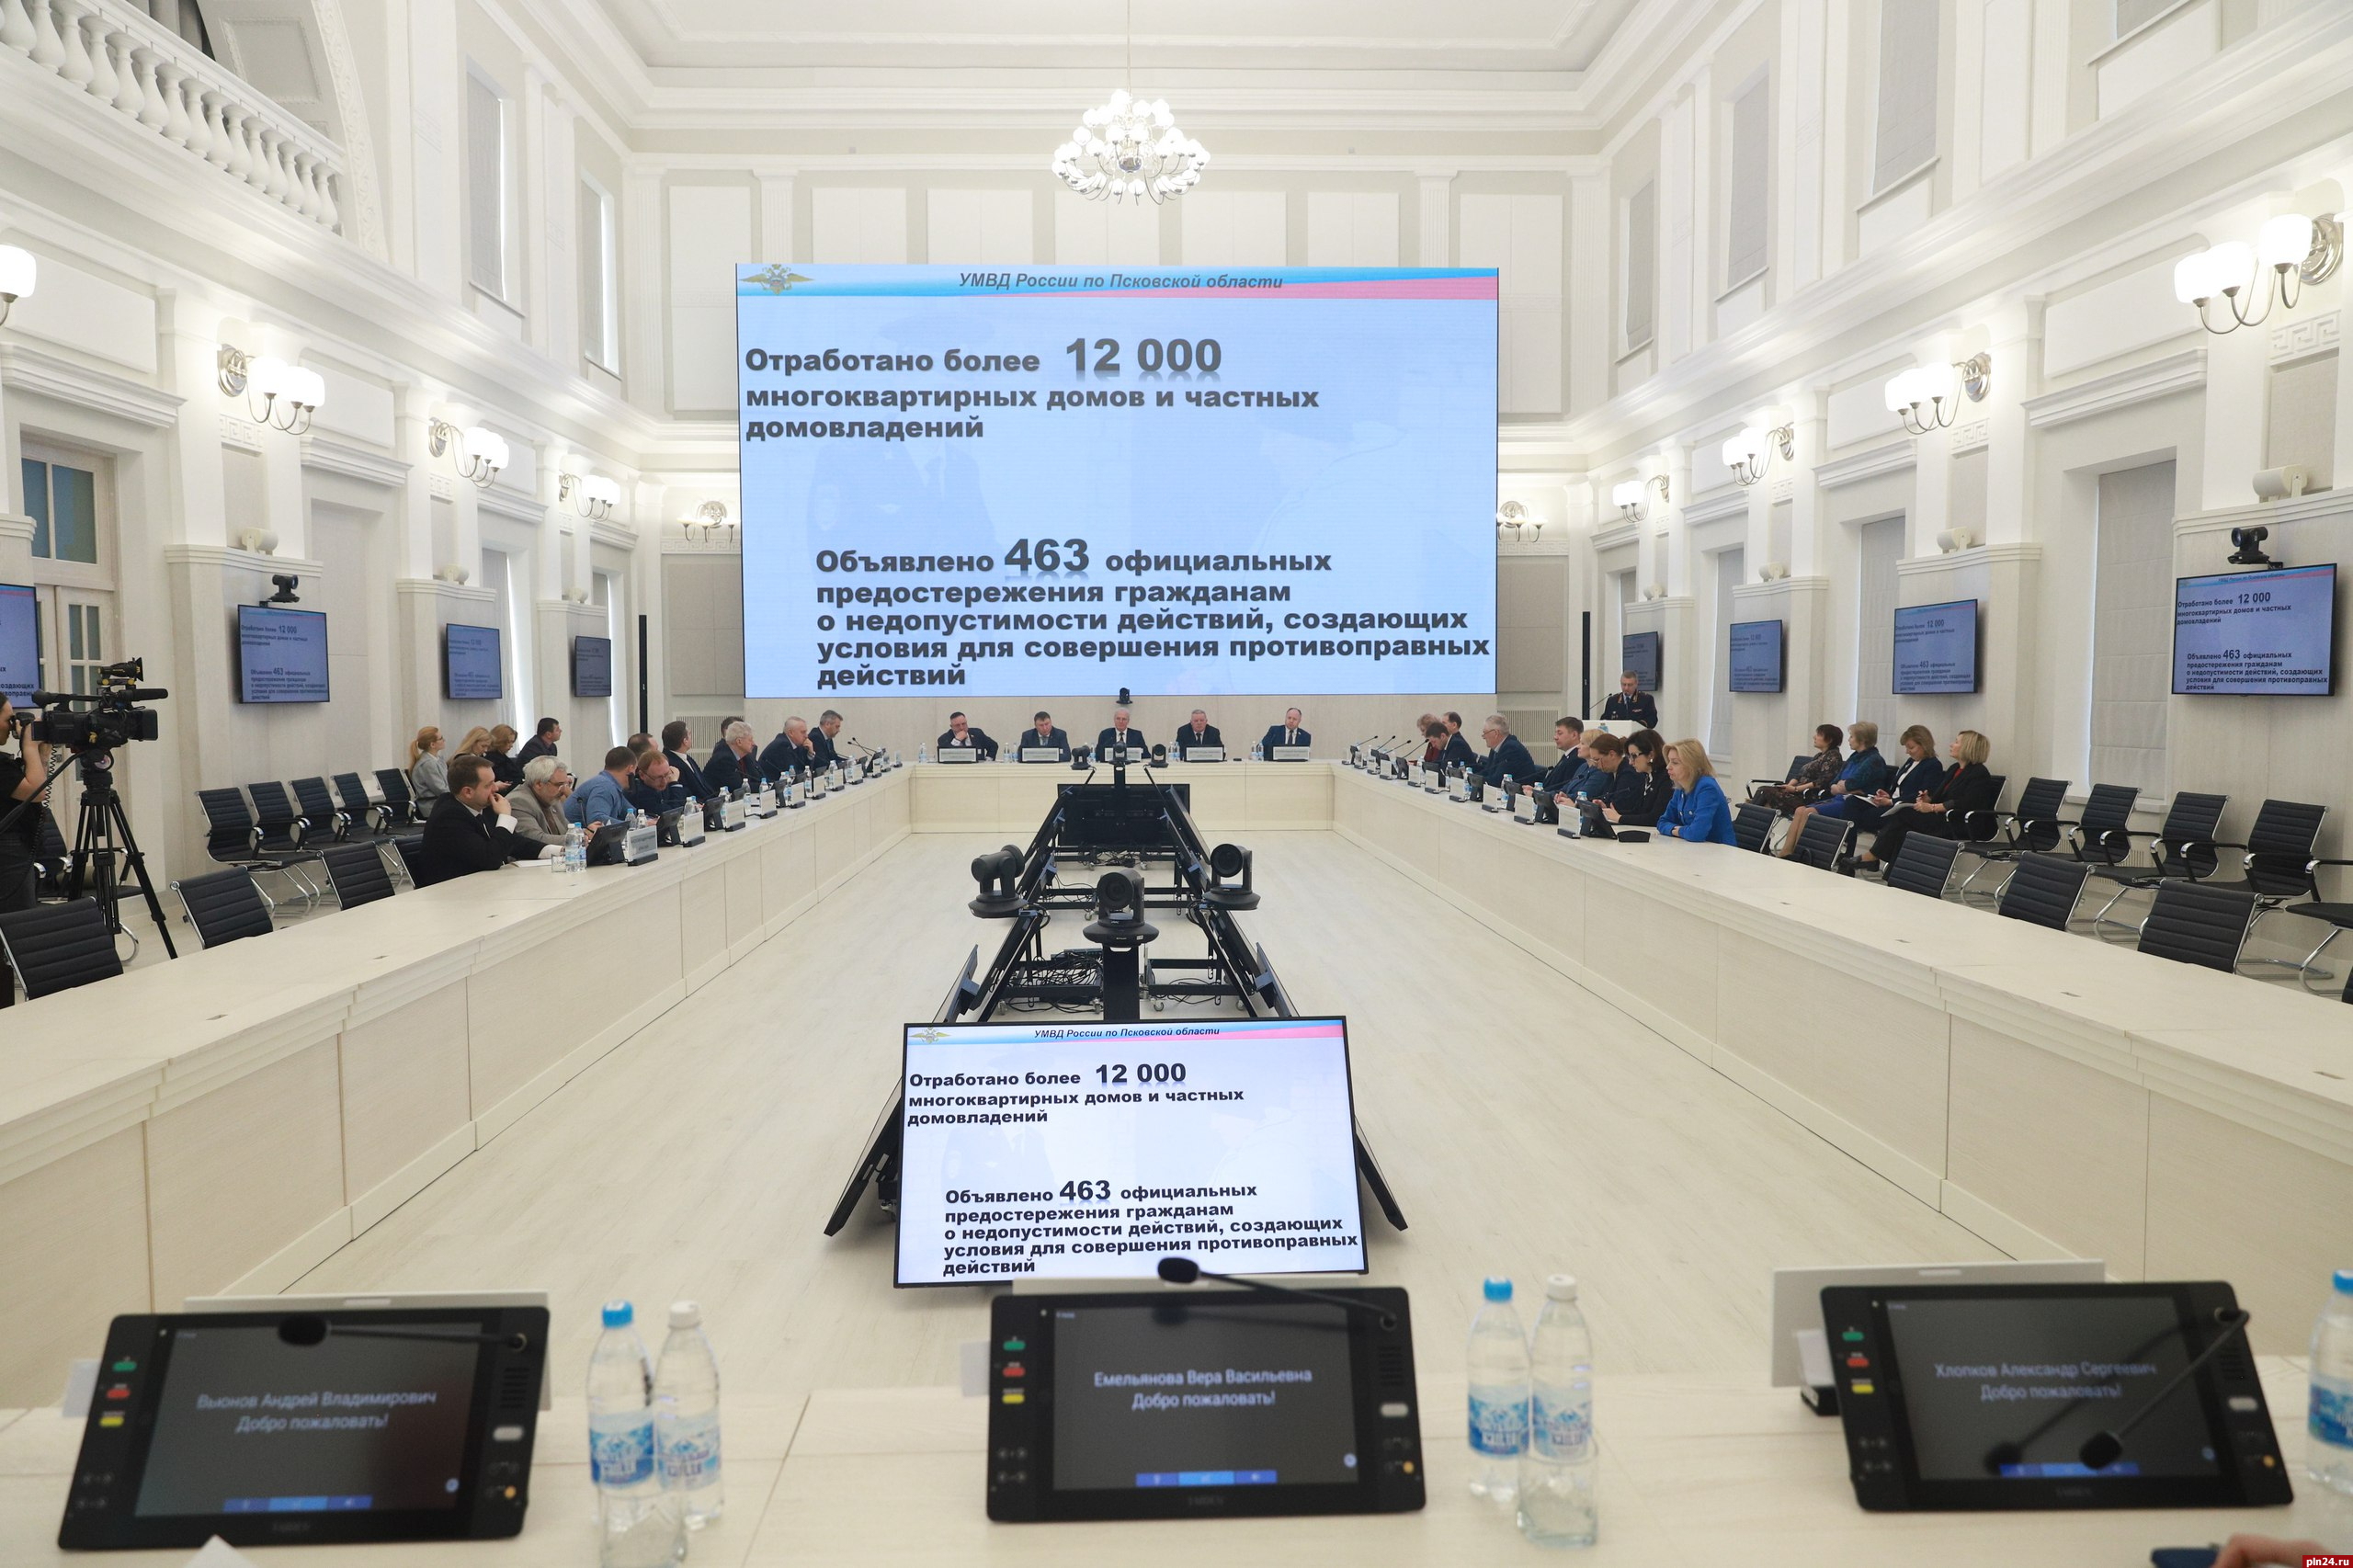 Информационно-аналитический отдел переименовали в Псковском областном Собрании